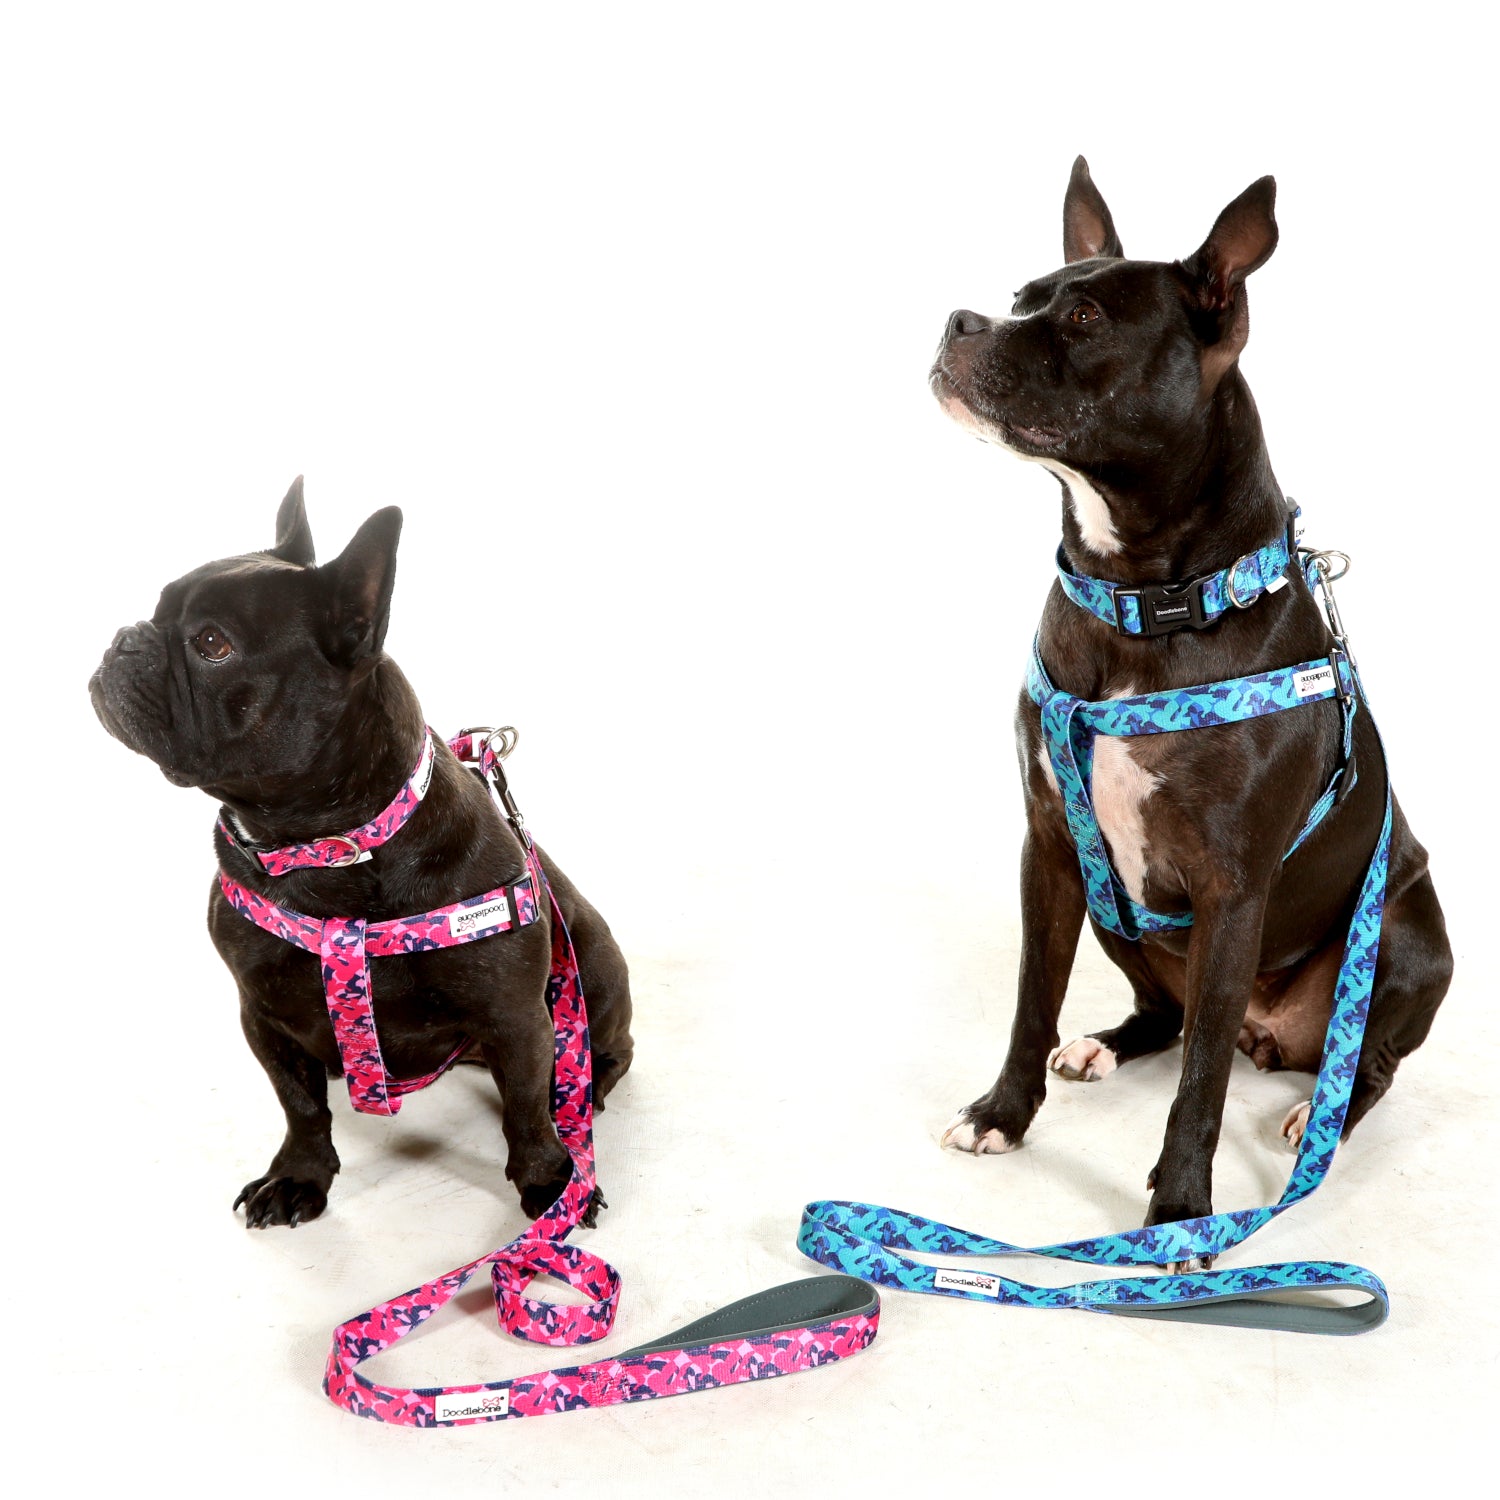 Doodlebone Originals Dog Lead 1.2m Violet 3 Sizes